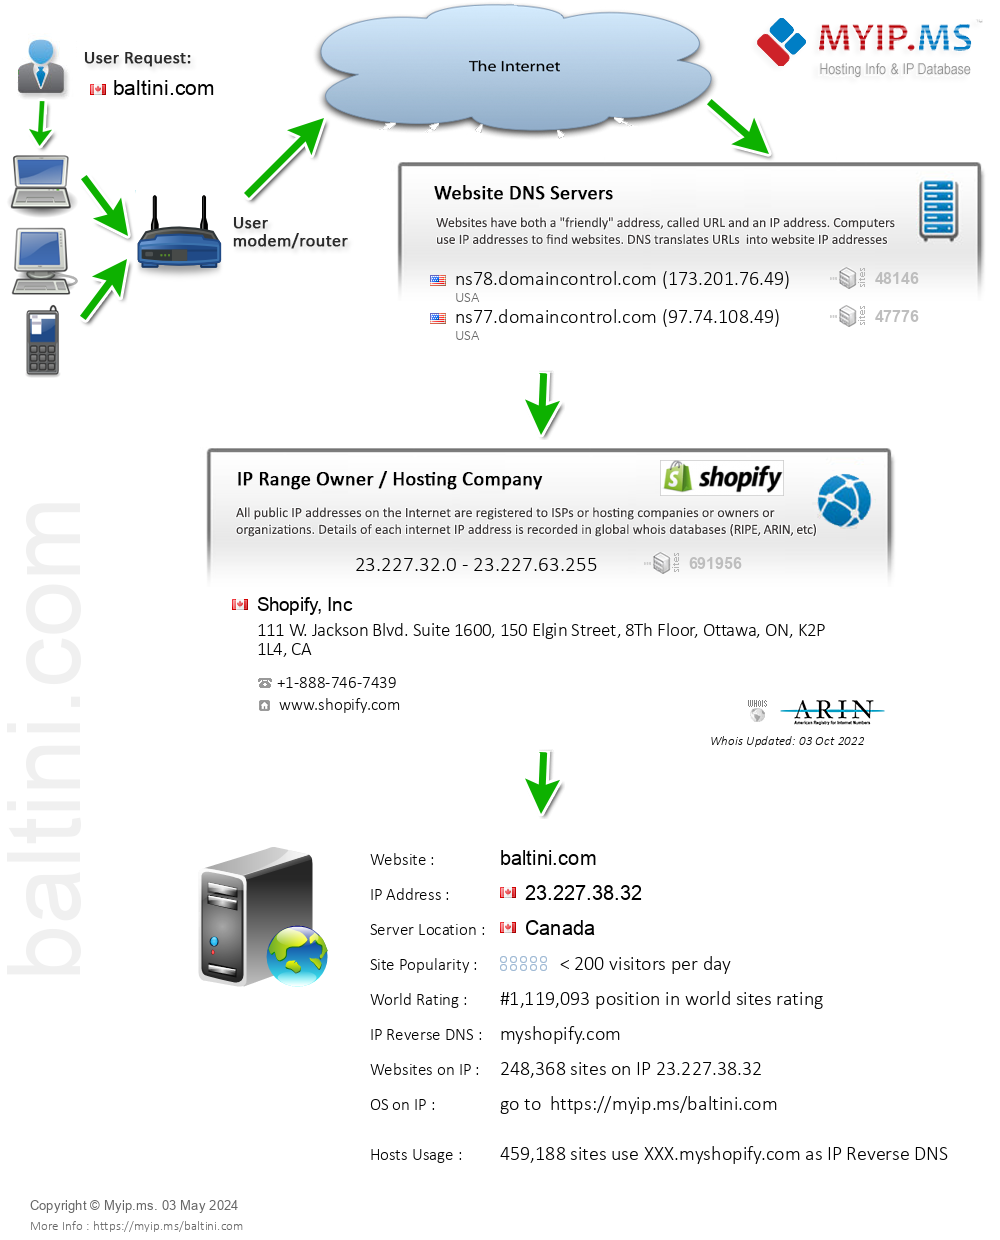 Baltini.com - Website Hosting Visual IP Diagram